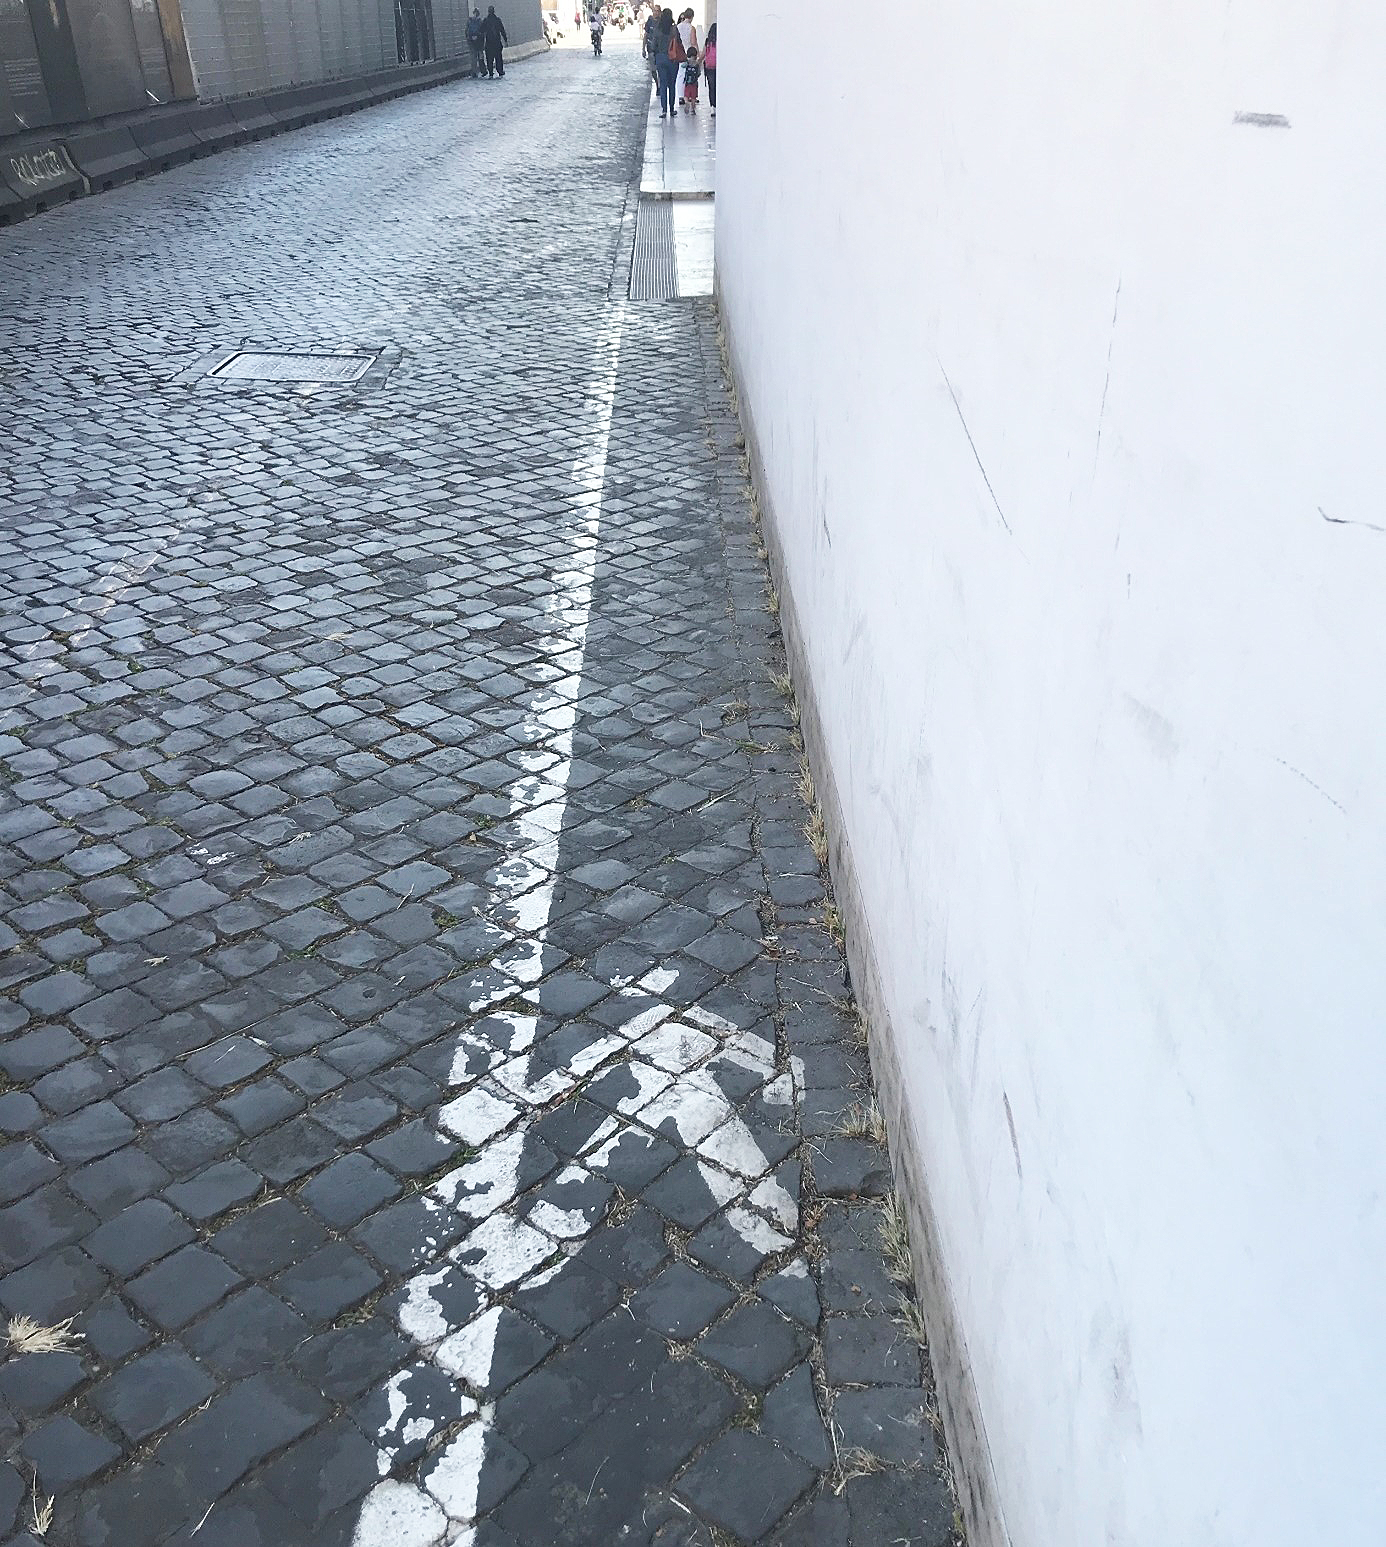 Bild av stenlagd trottoar med vit målad linje och streckgubbe som visar gångfältet på Via di Ripetta, vid Museo dell’Ara Pacis i Rom.